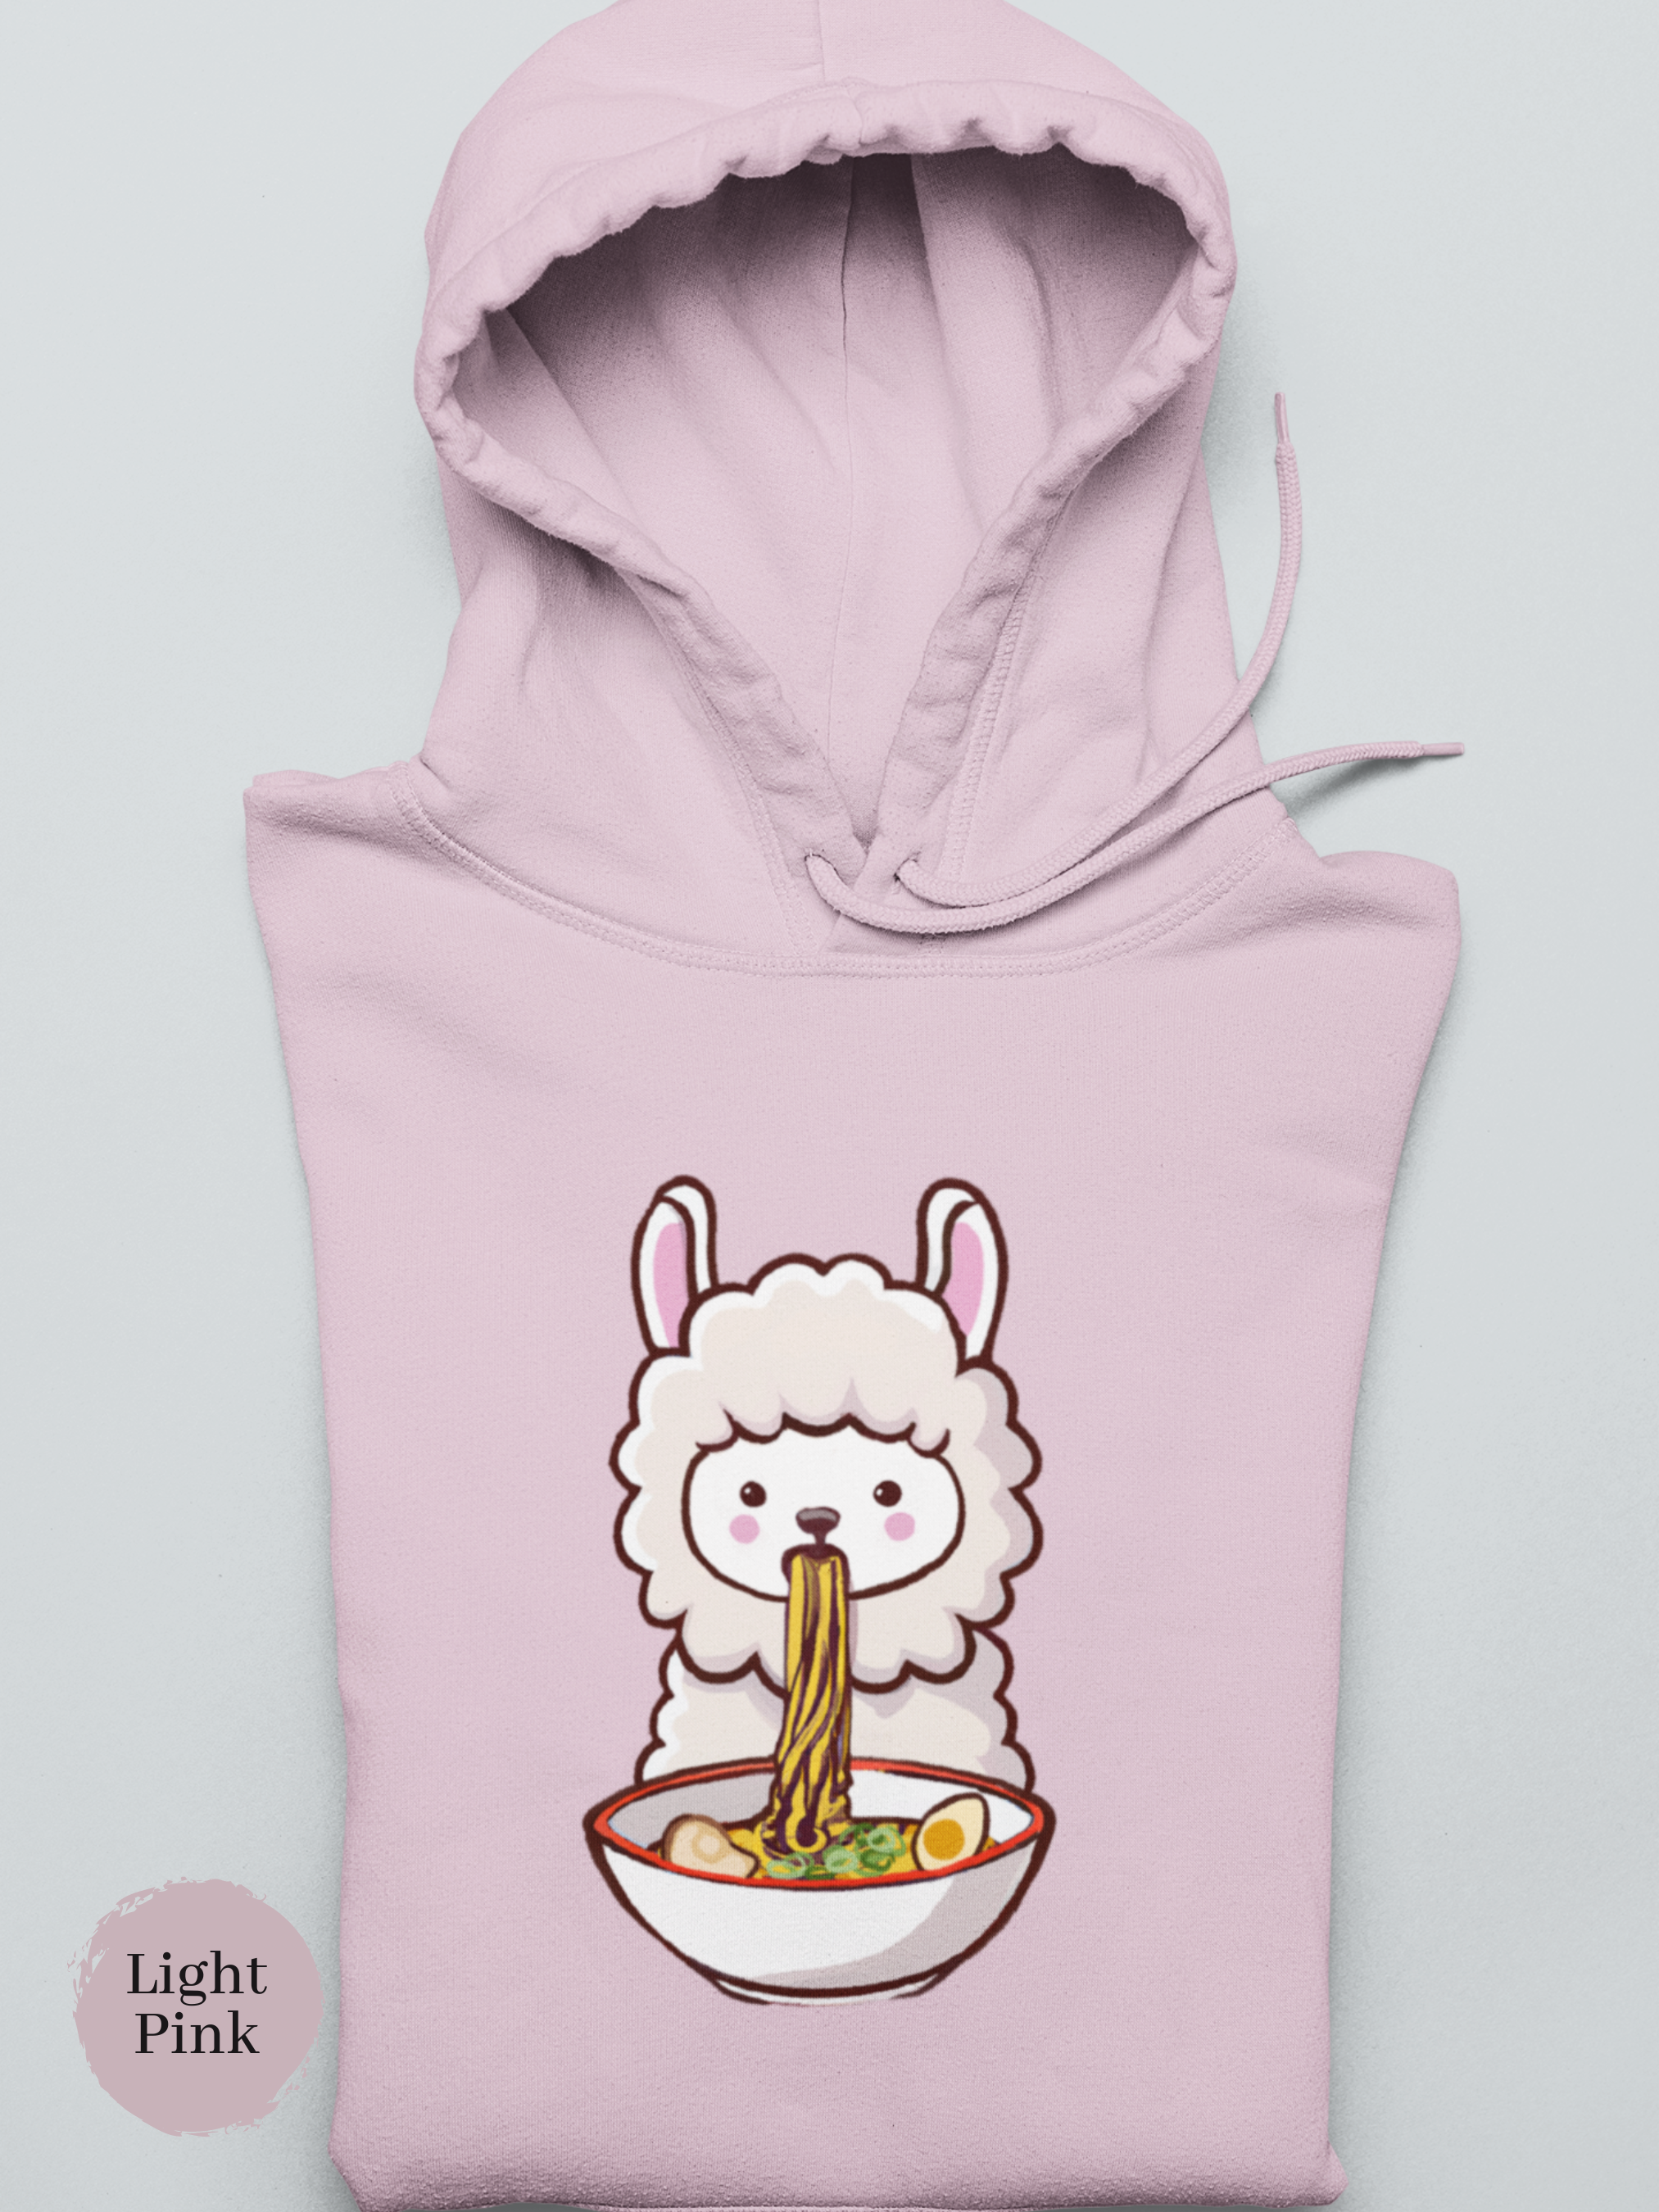 Ramen Hoodie: Llama Noodle Love - Foodie Hoodie with Ramen Art and Playful Twist